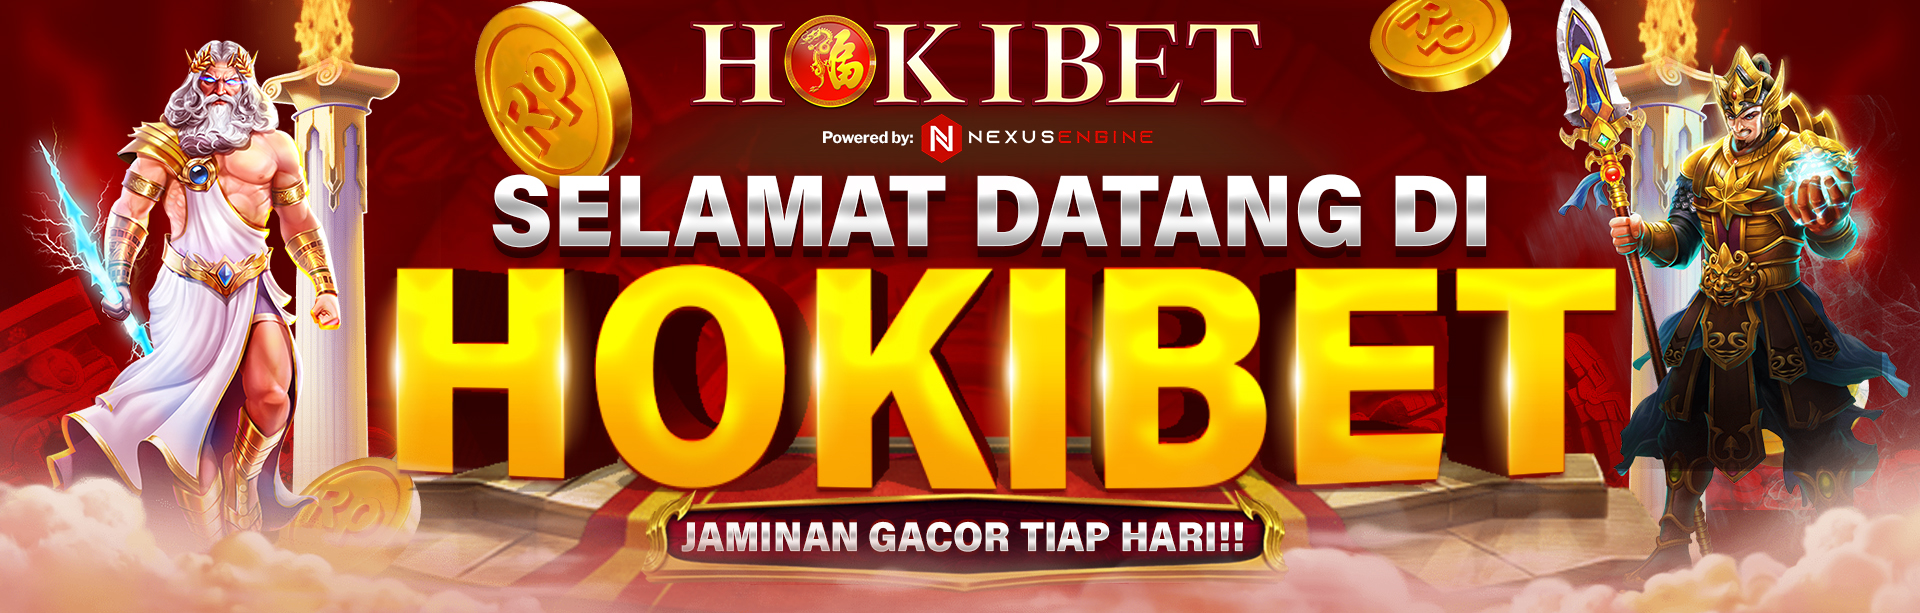 Selamat datang di Situs Slot Gacor Hokibet!